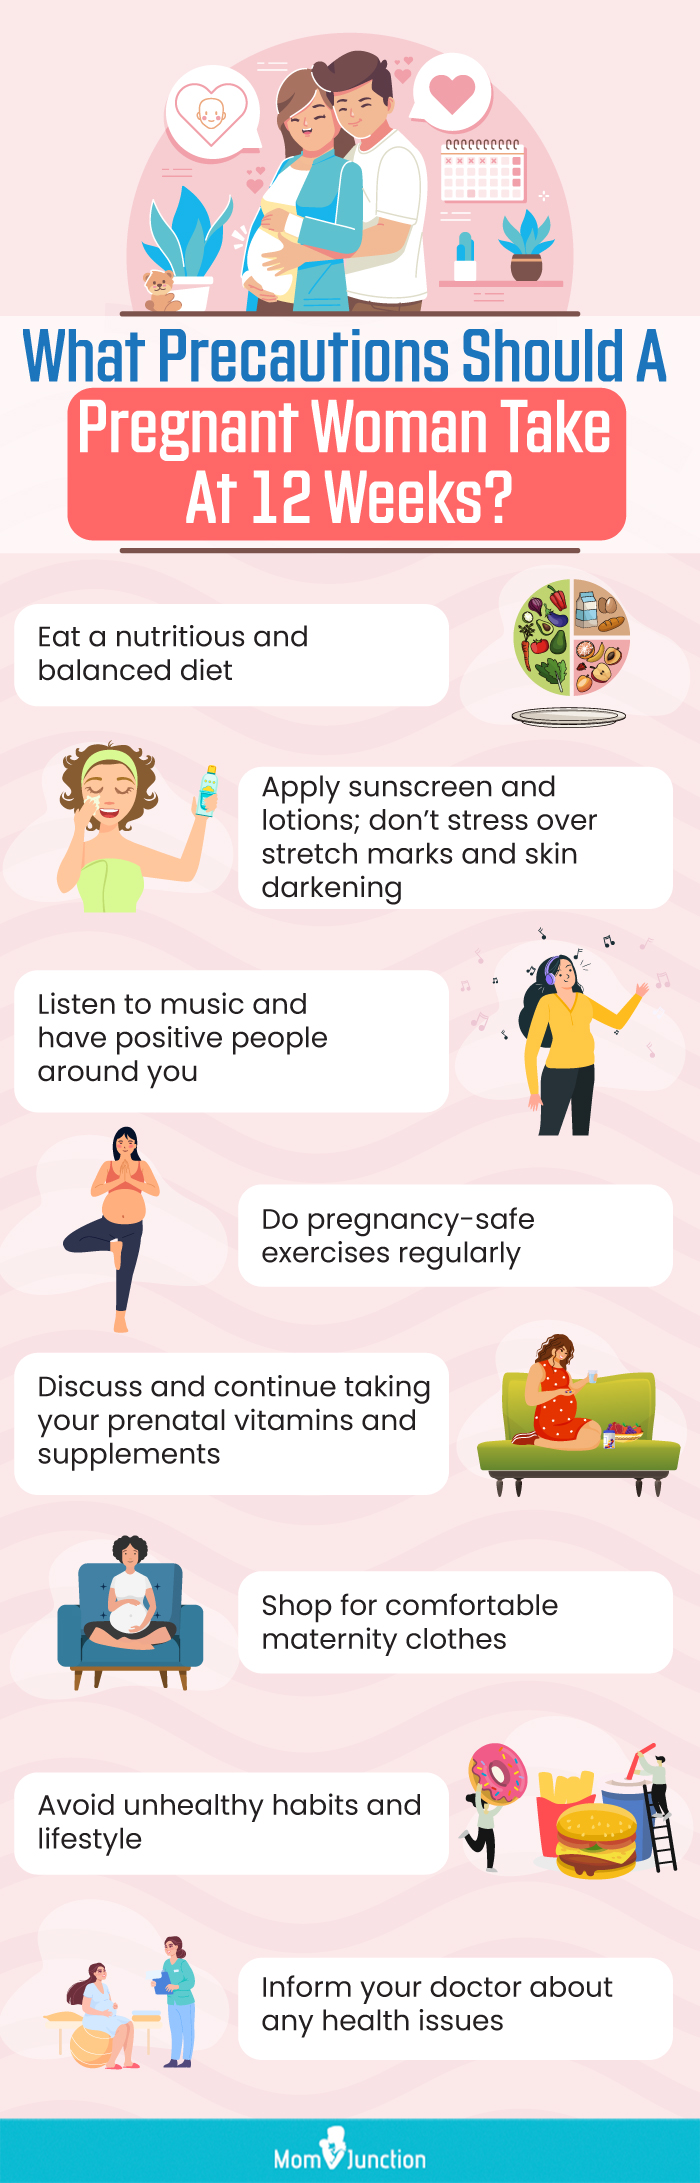 Week 12 of Pregnancy - Signs and Symptoms - Huggies AU